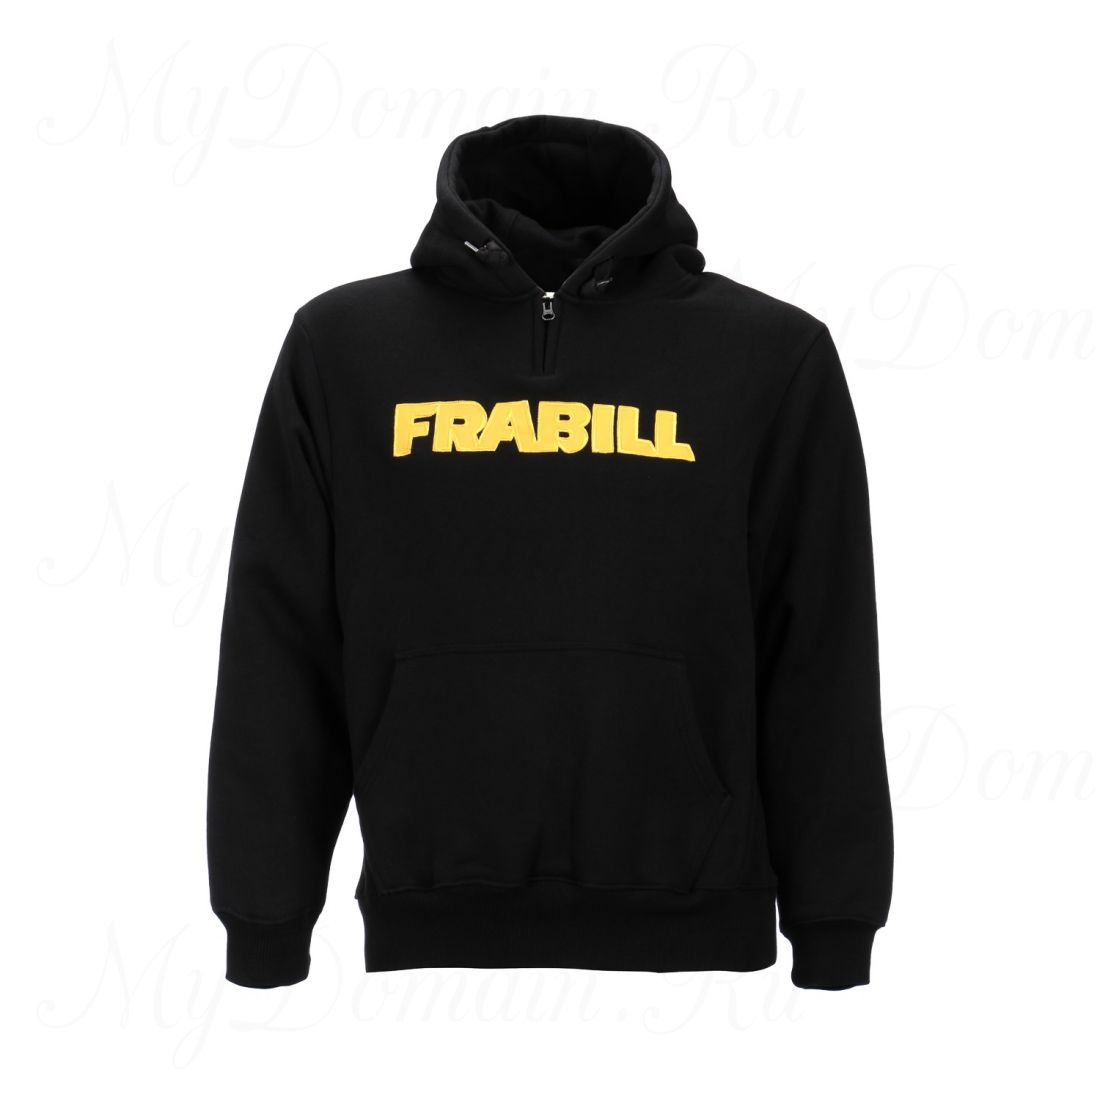 Кенгурушка Frabill Heavyweight Cotton Hooded Sweatshirt черная размер M